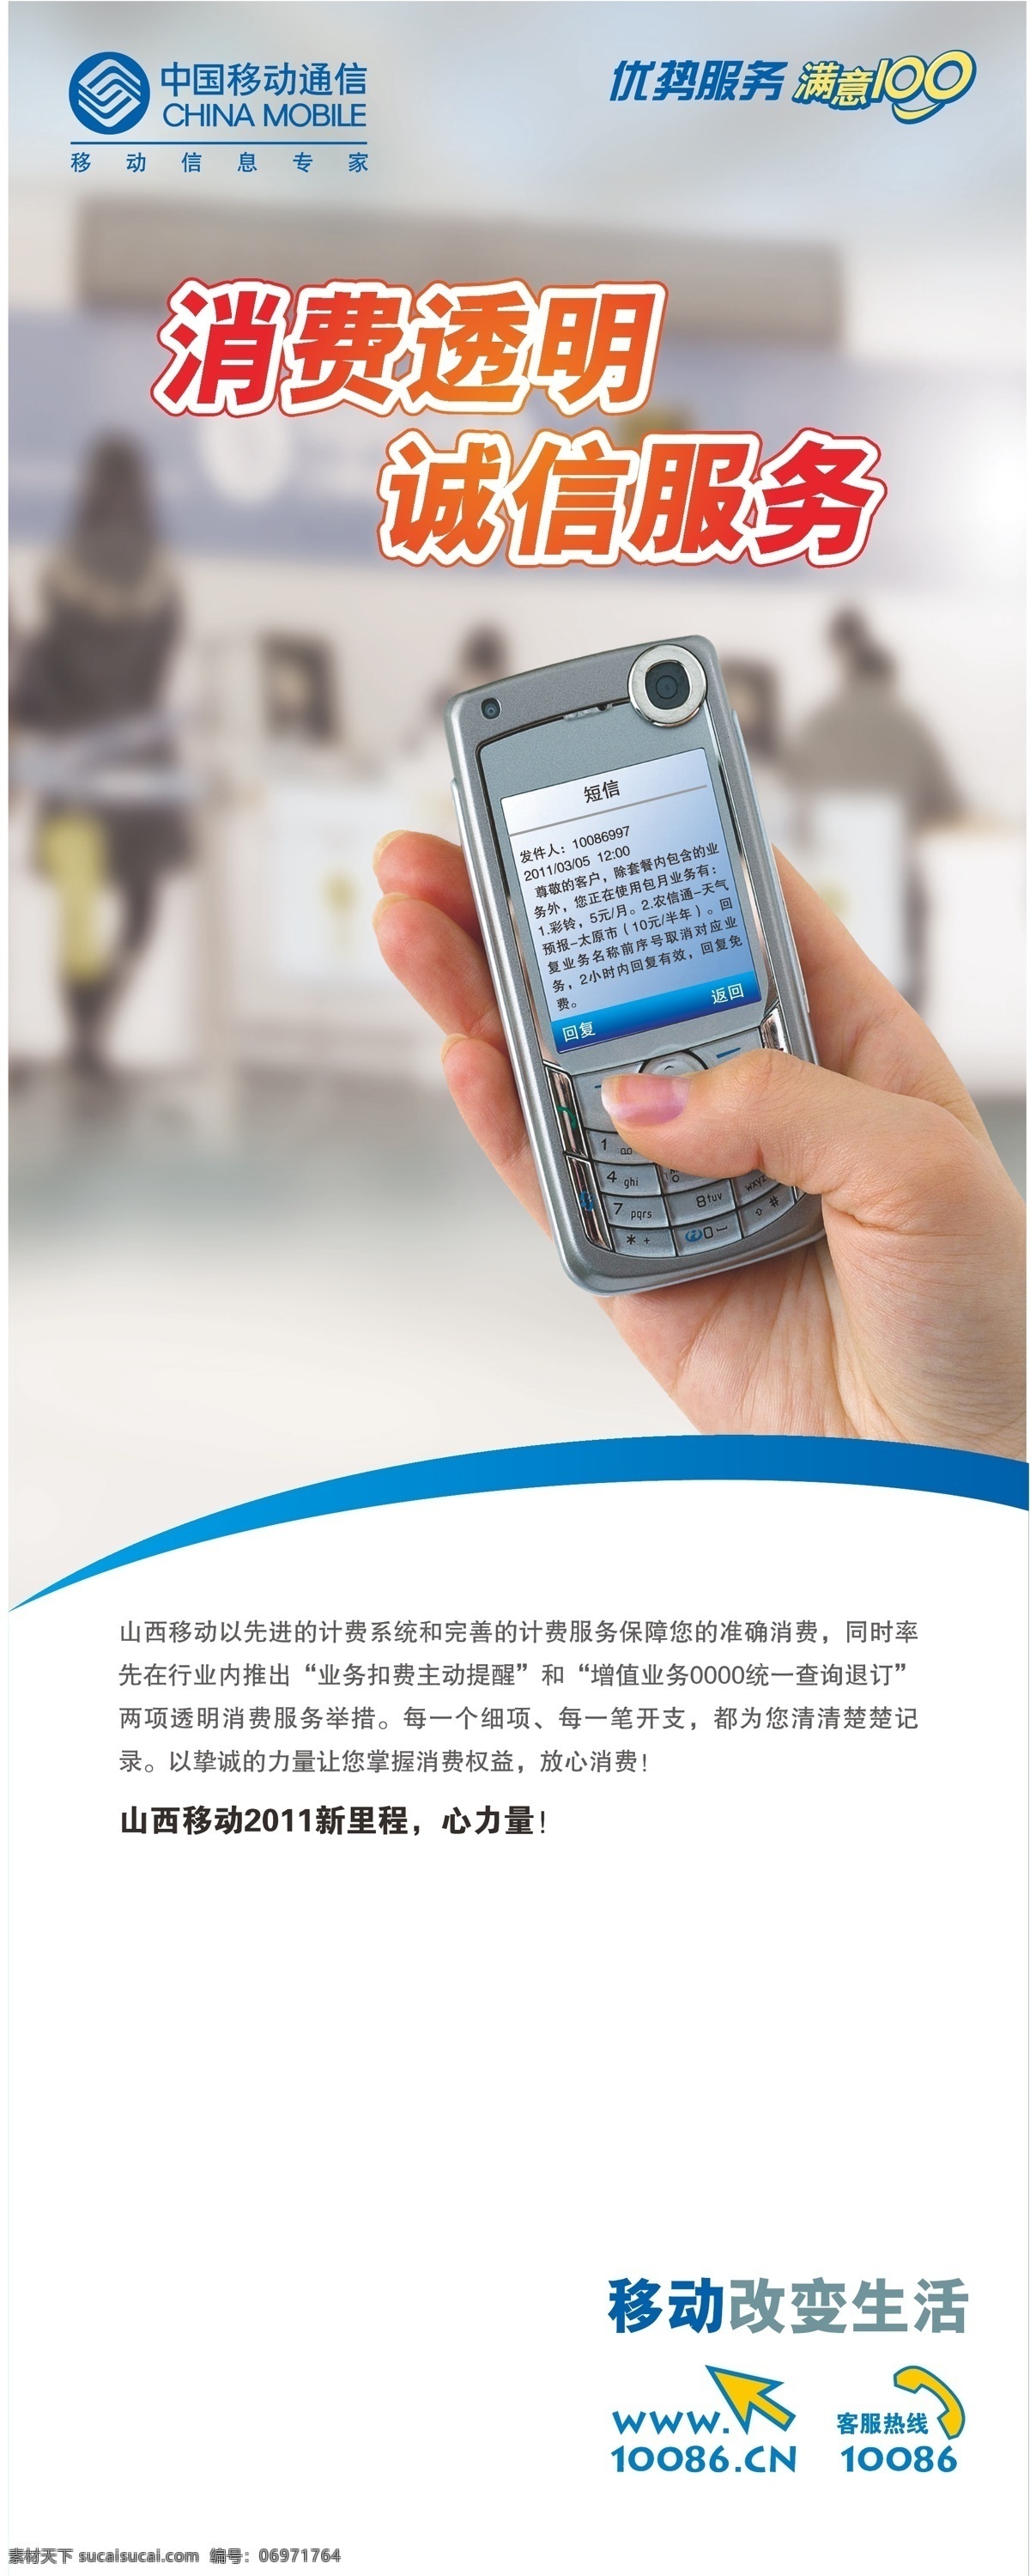 消费 透明 诚信服务 电话 易拉宝 中国移动 消费透明 矢量 矢量图 现代科技